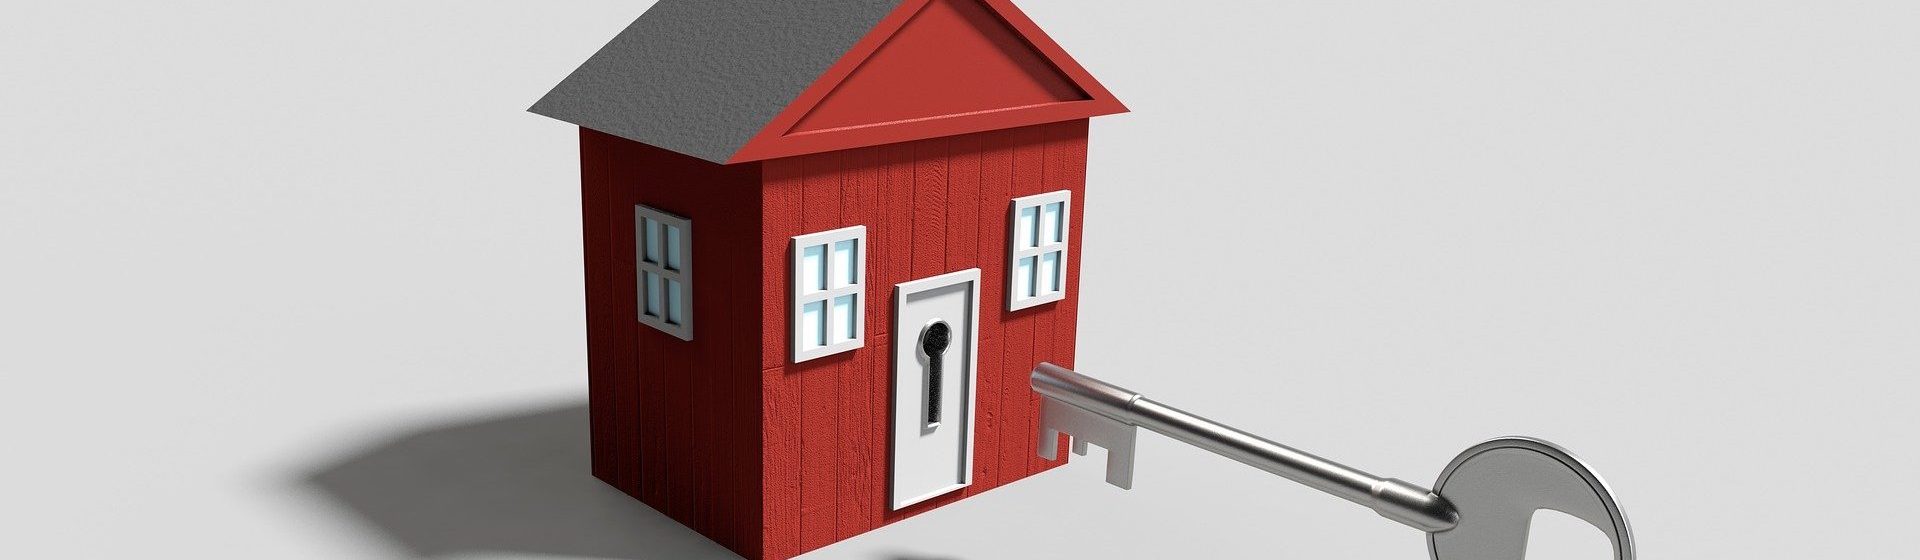 Stappenplan om een eerste huis te kopen